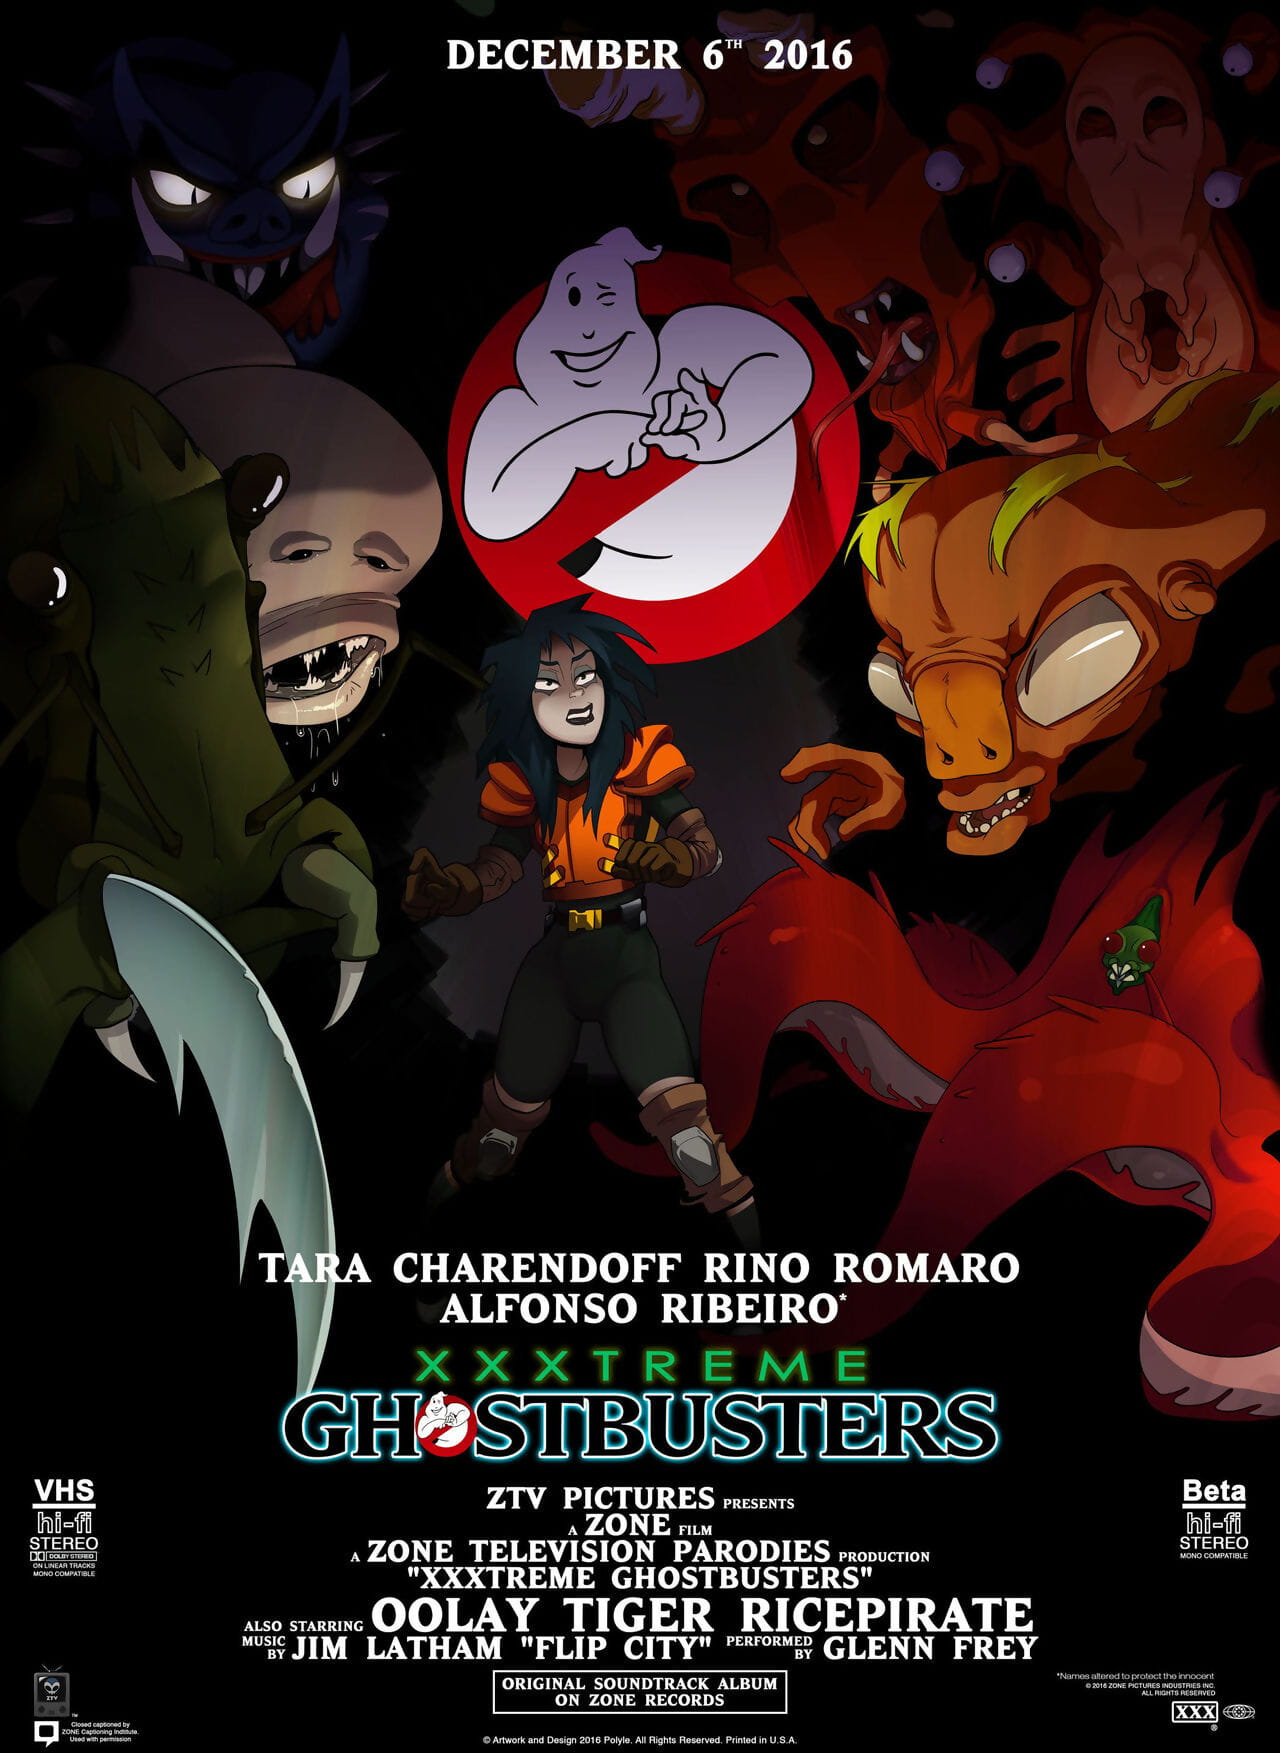 xxxtreme ghostbusters parodia animazione gif e screencaps page 1